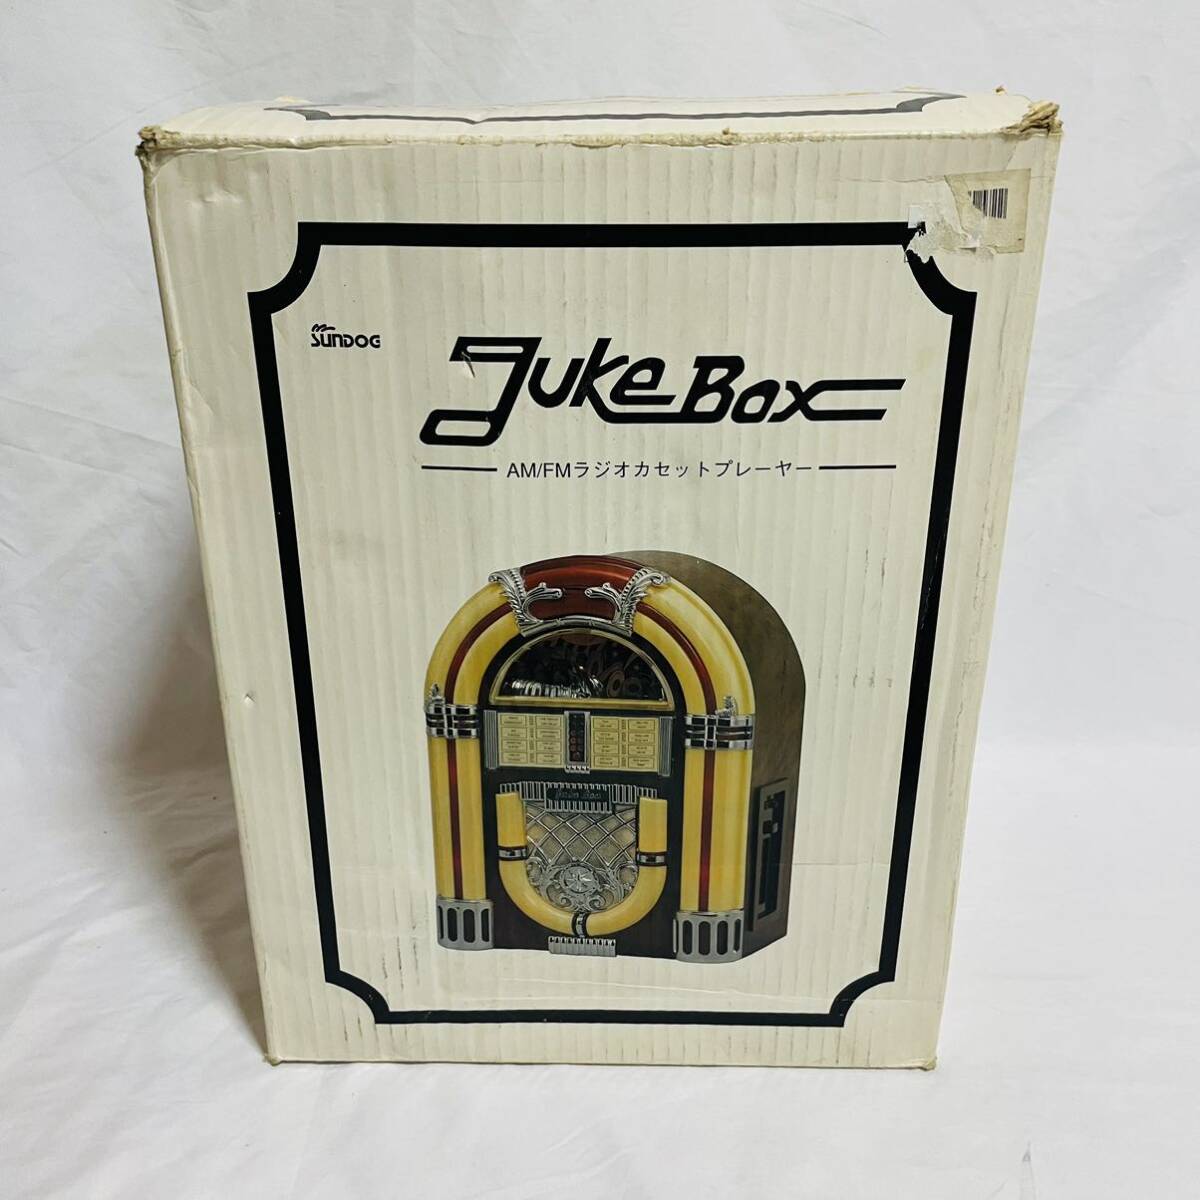 SUNDOG SDC-500 ジュークボックス JUKE BOX / カセットデッキ付き AM/FM ラジオ